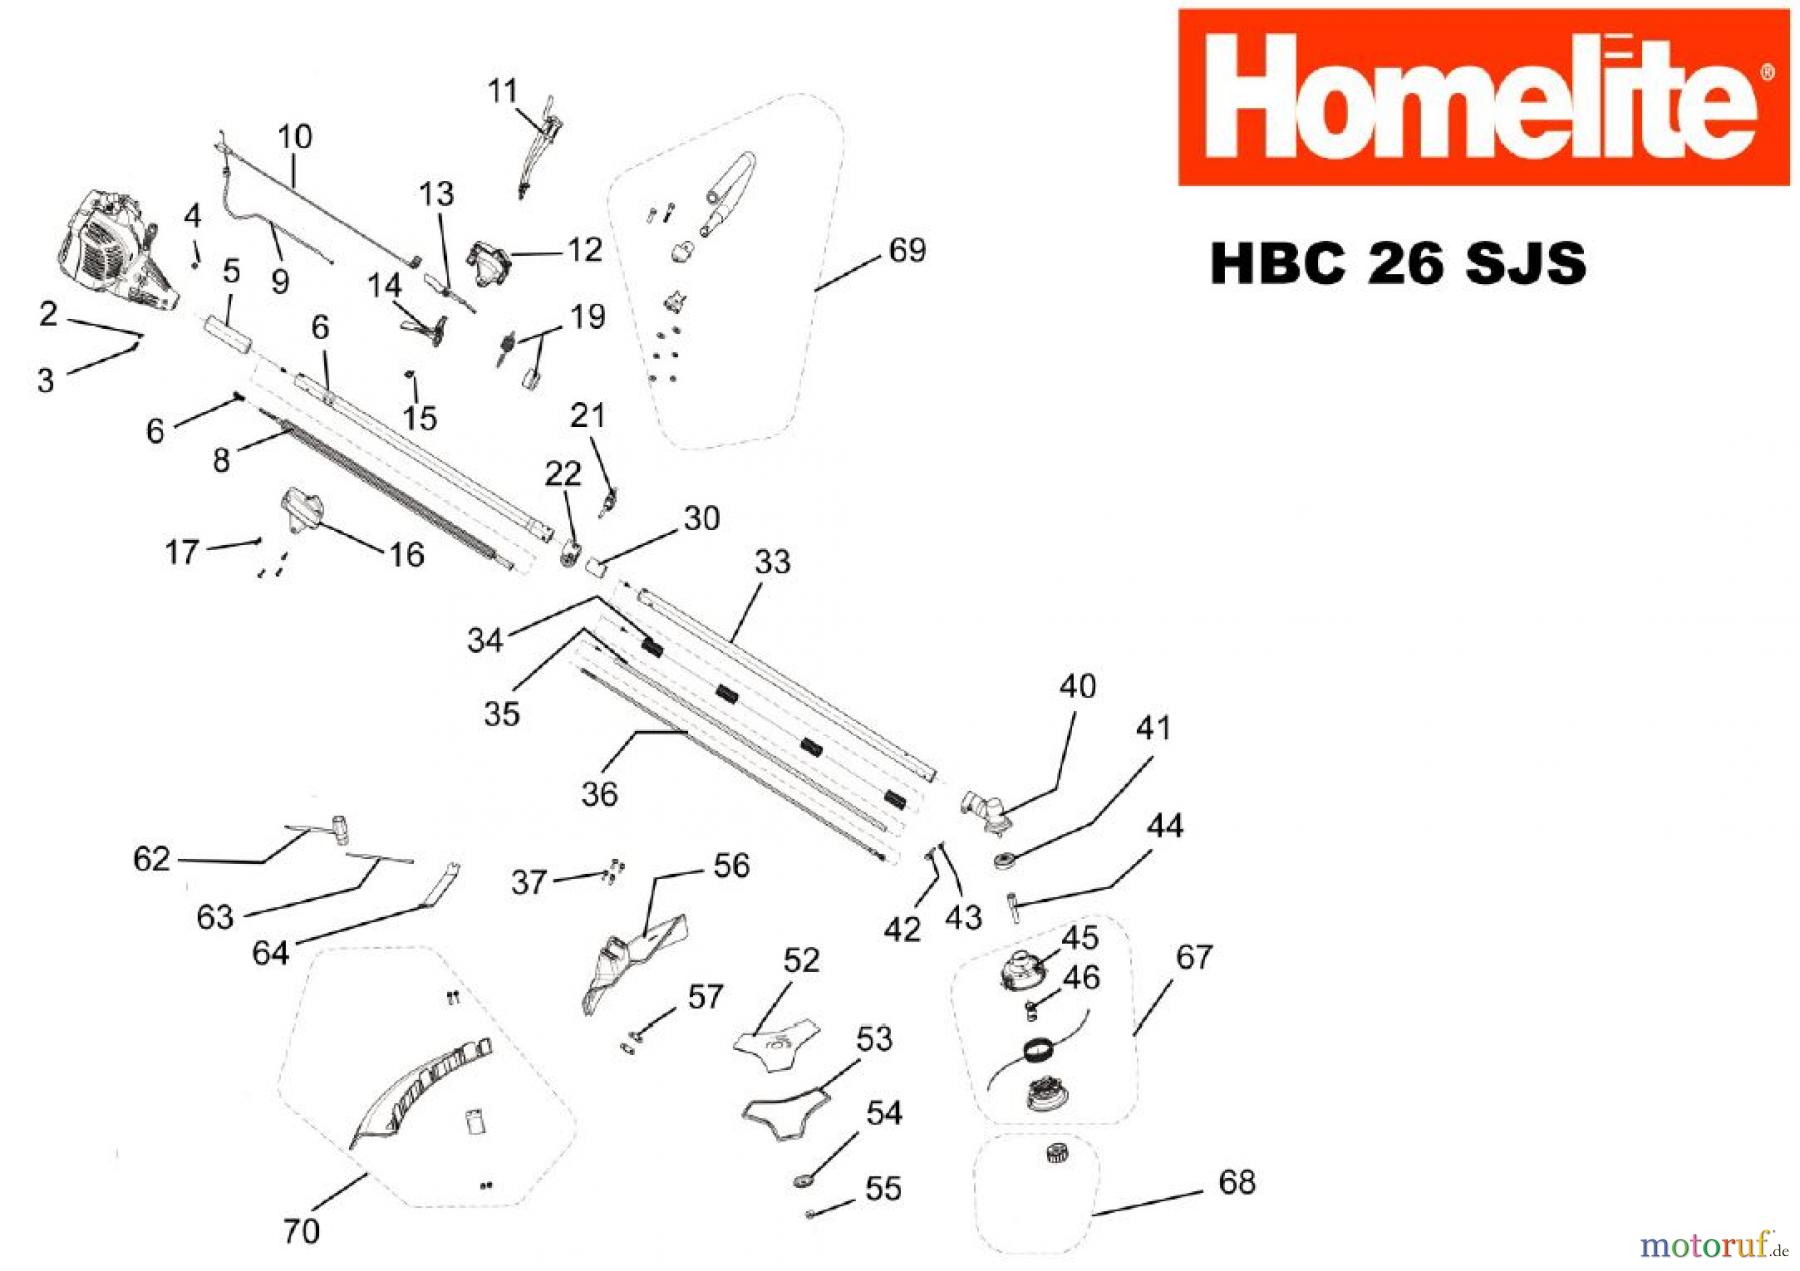  Homelite Motorsensen HBC26SJS Seite 1